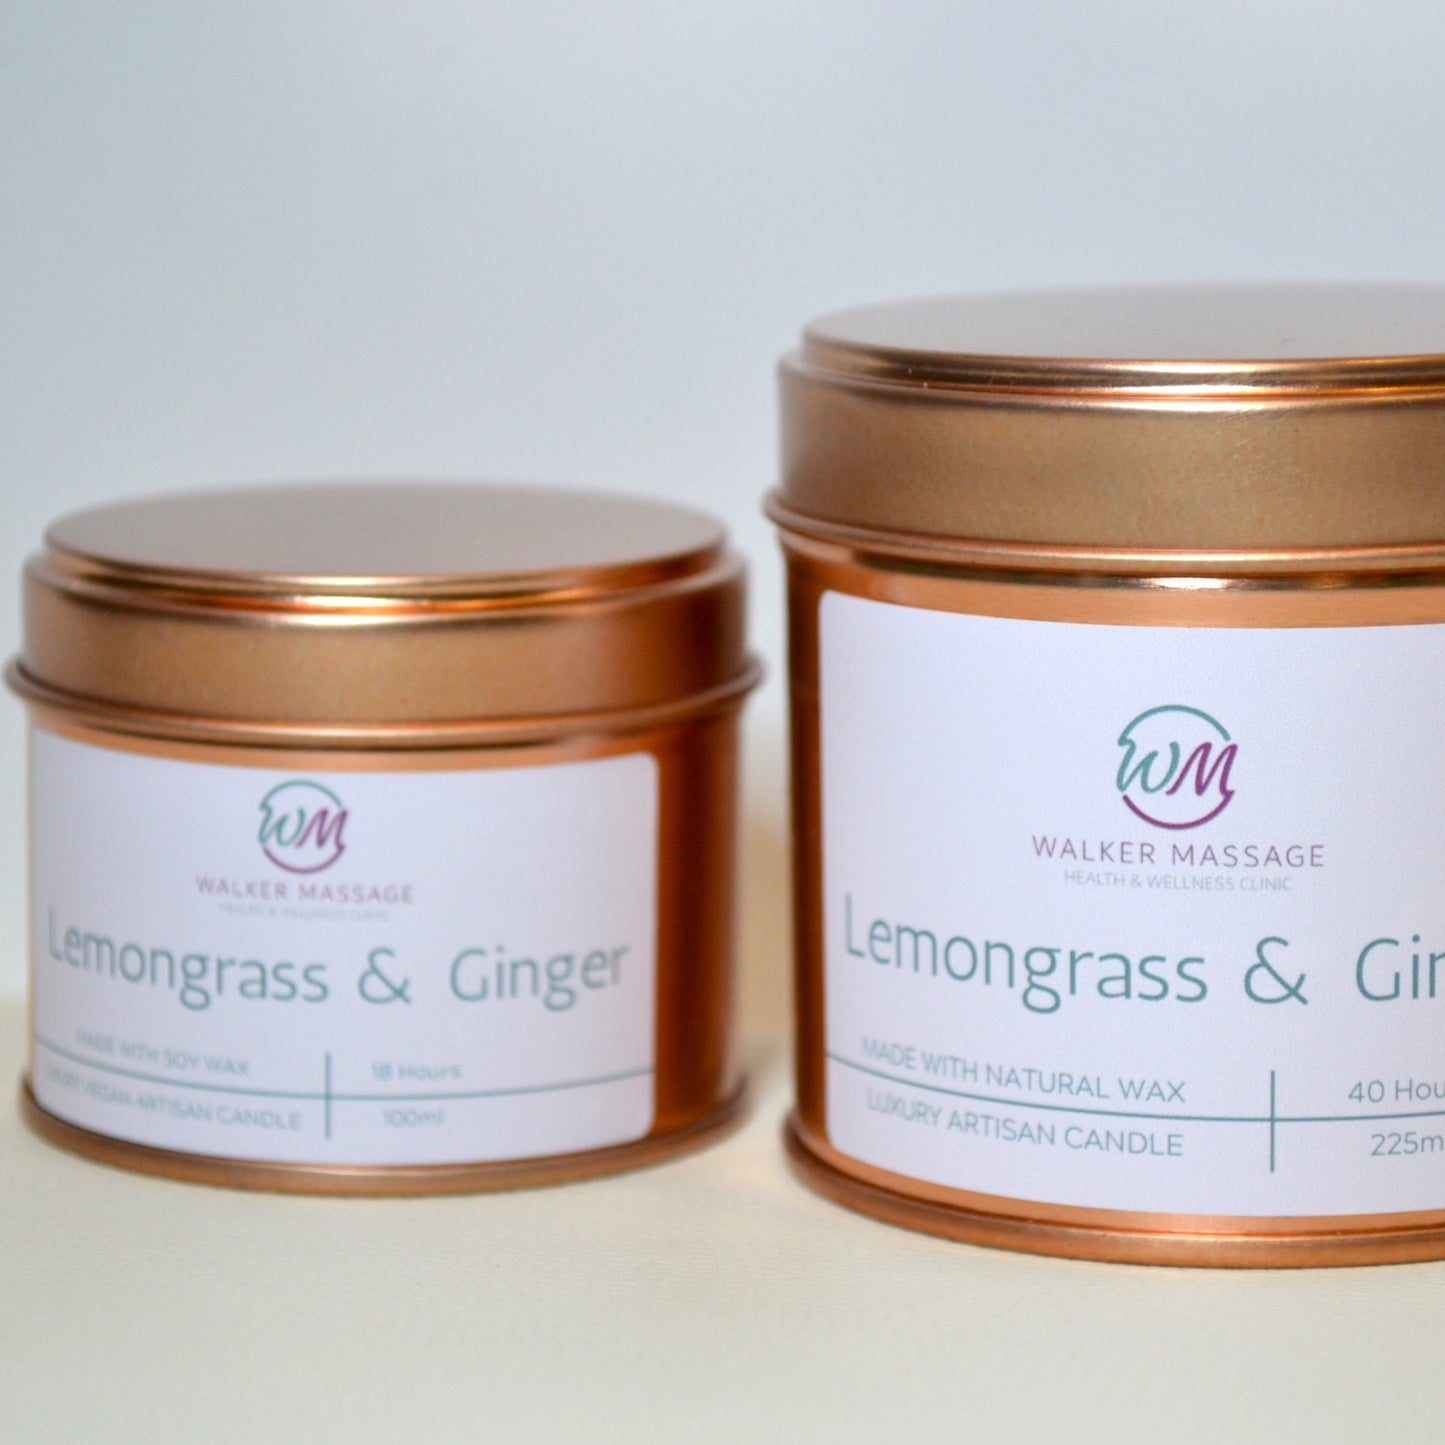 Lemongrass & Ginger Tin - 100ml